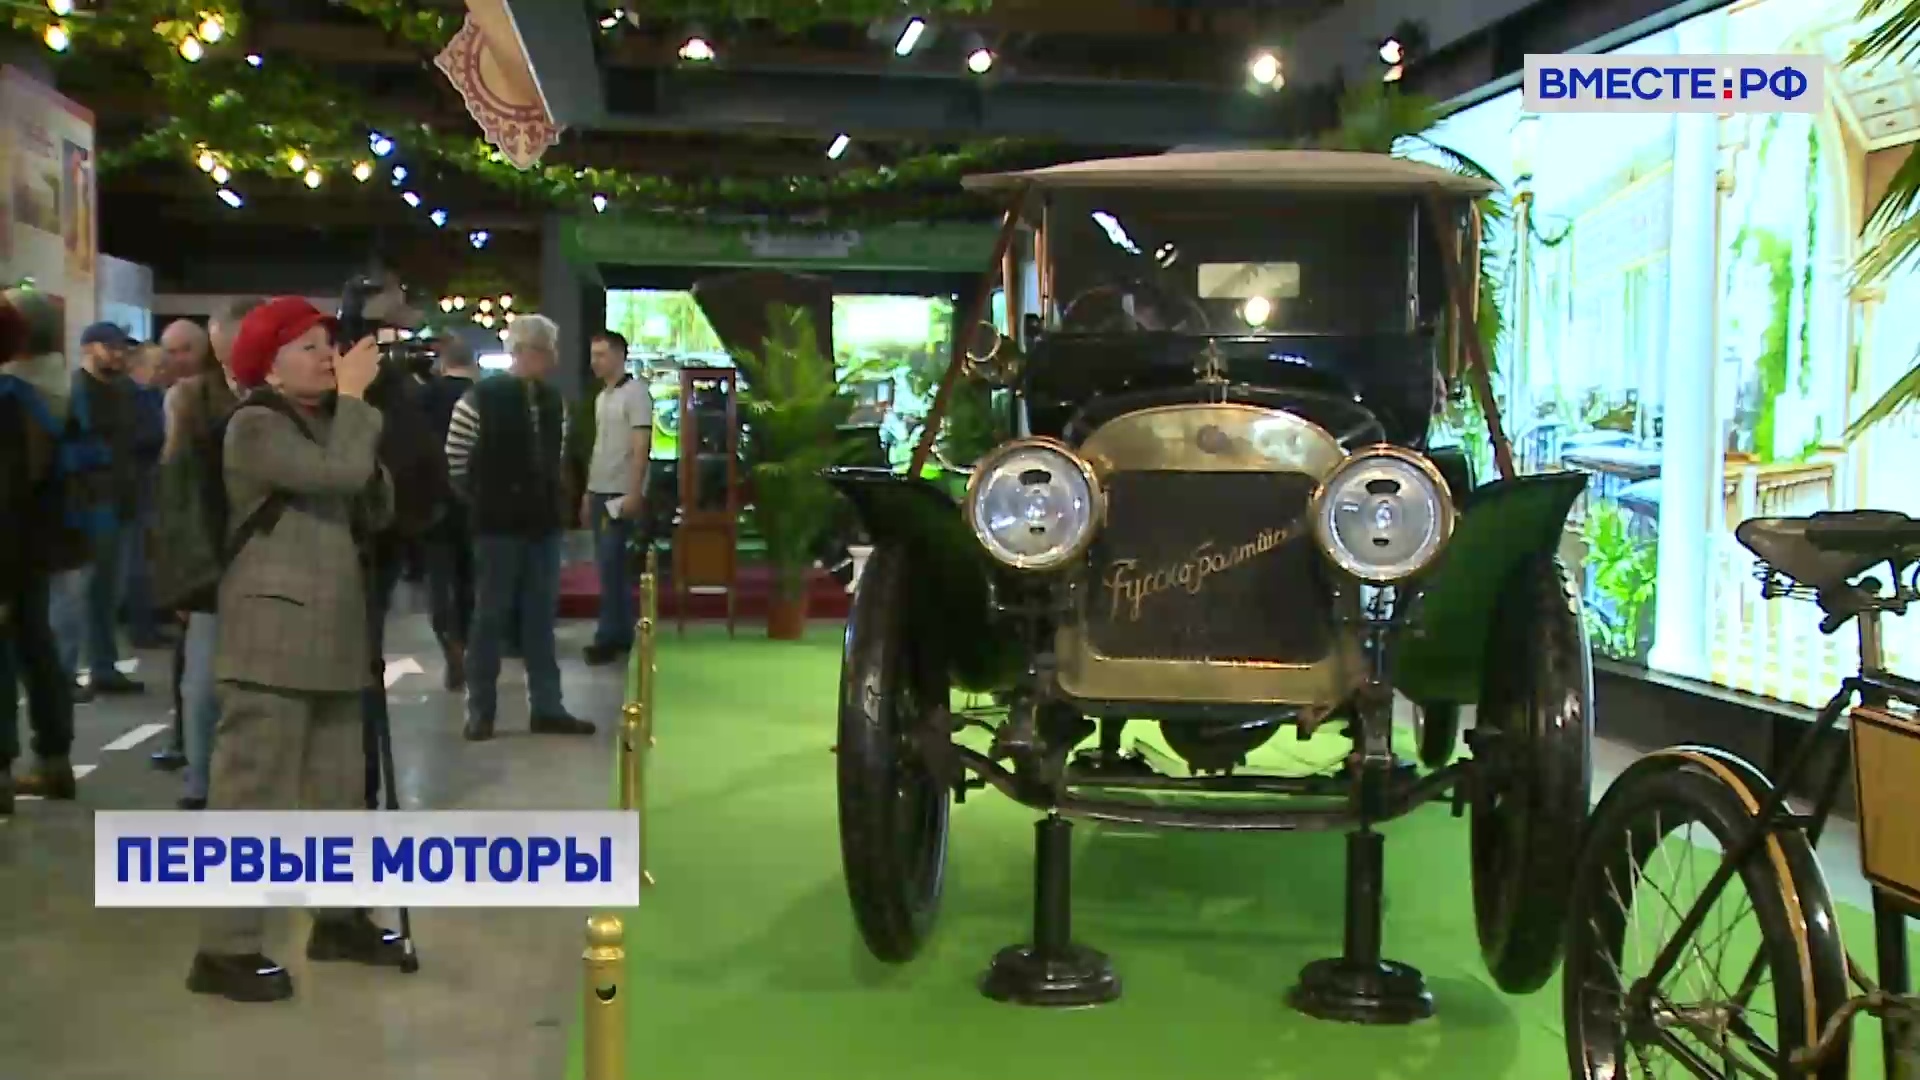 «Первые моторы России» представили на выставке в Москве